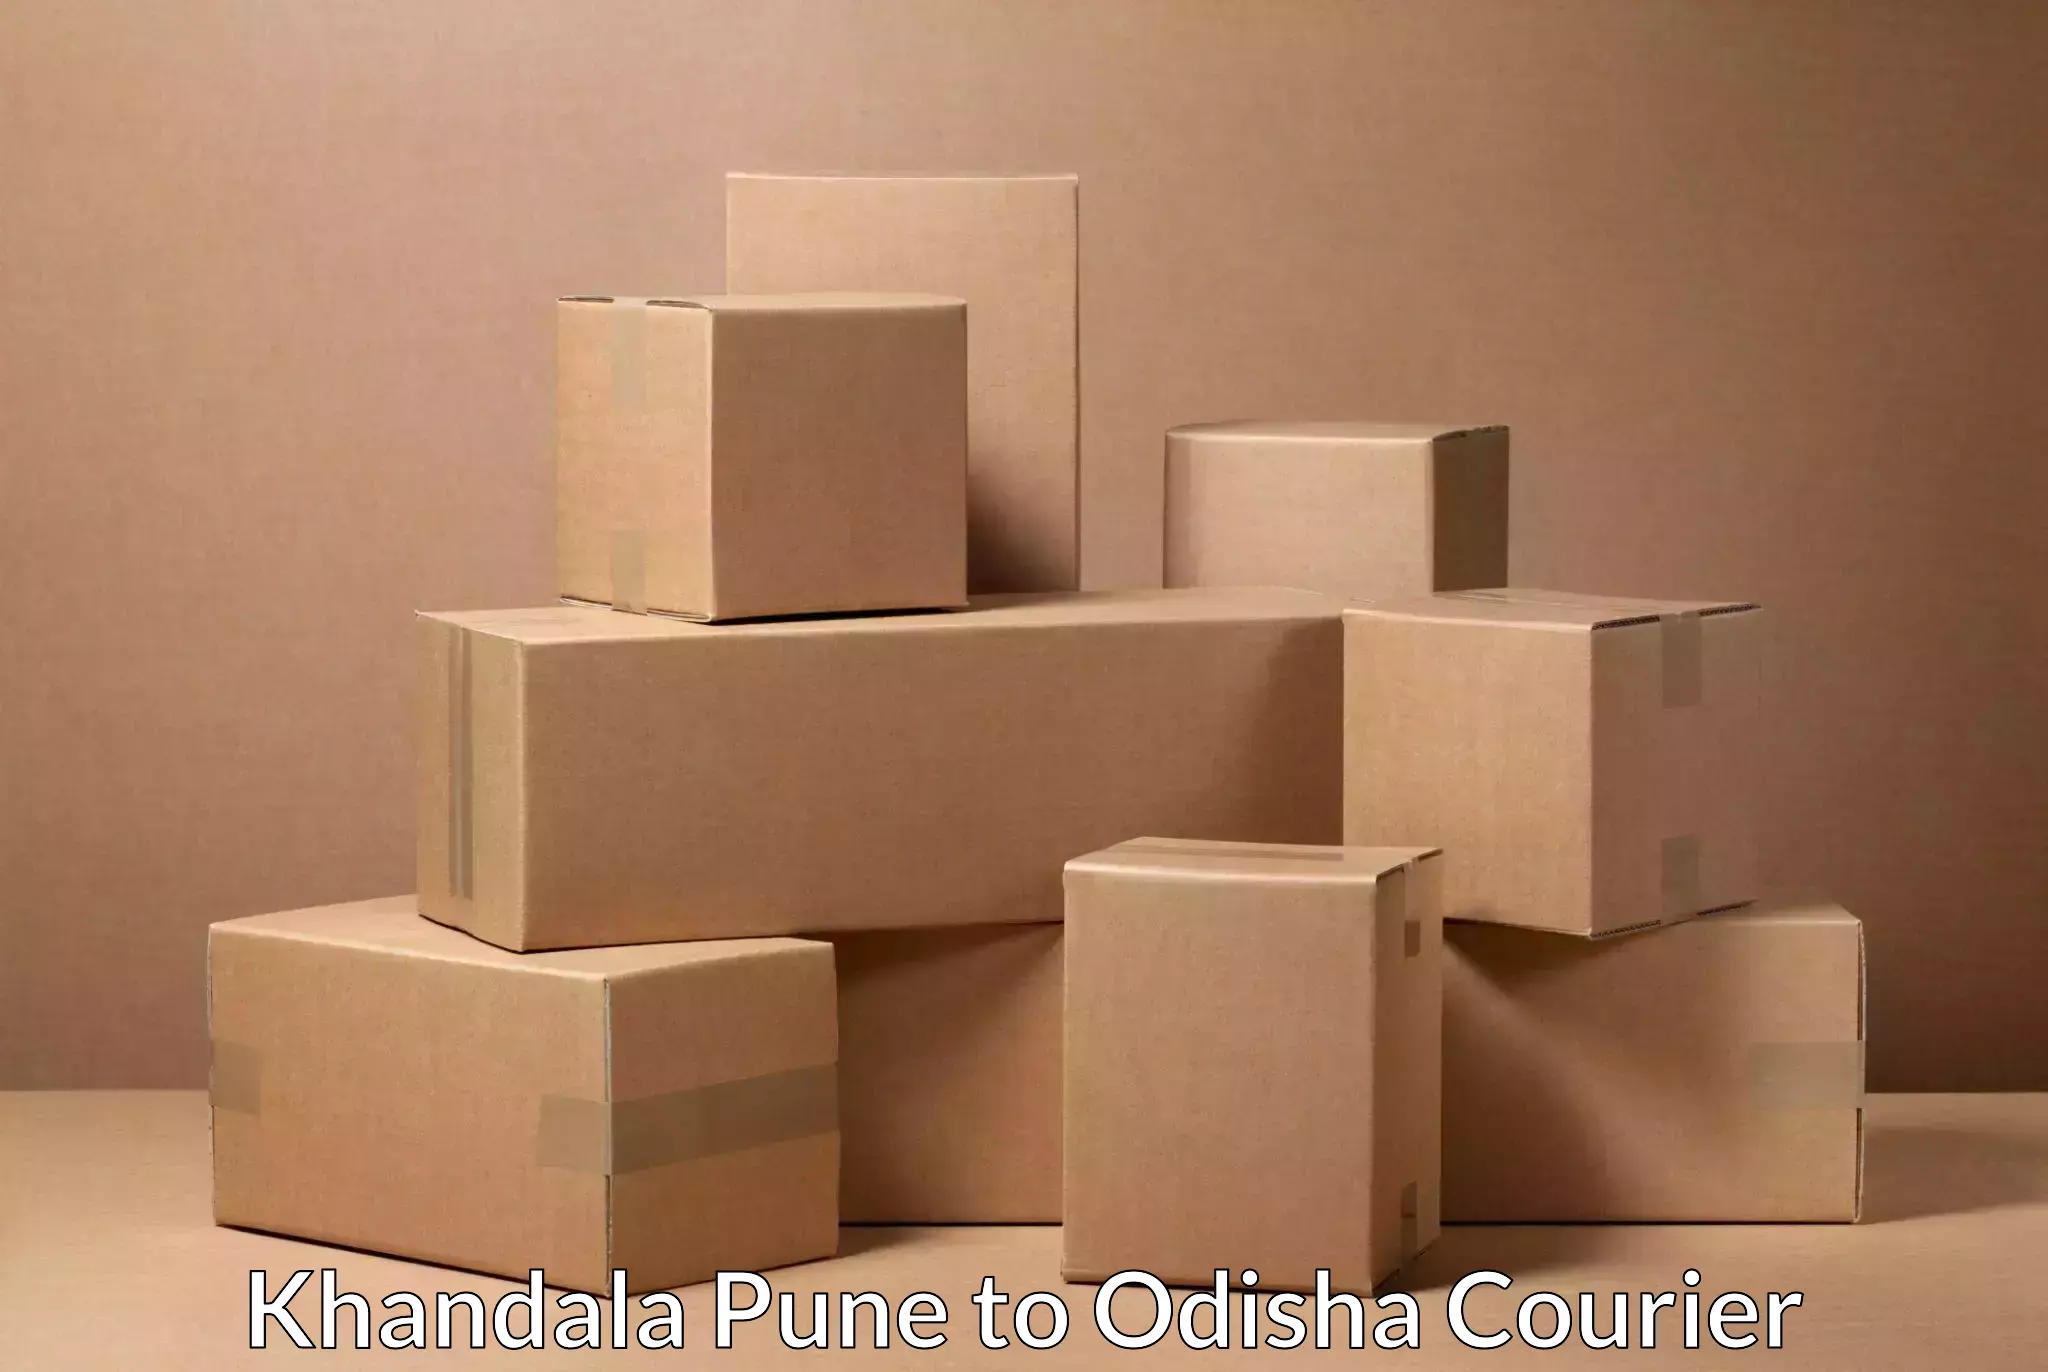 Efficient parcel tracking Khandala Pune to Odisha